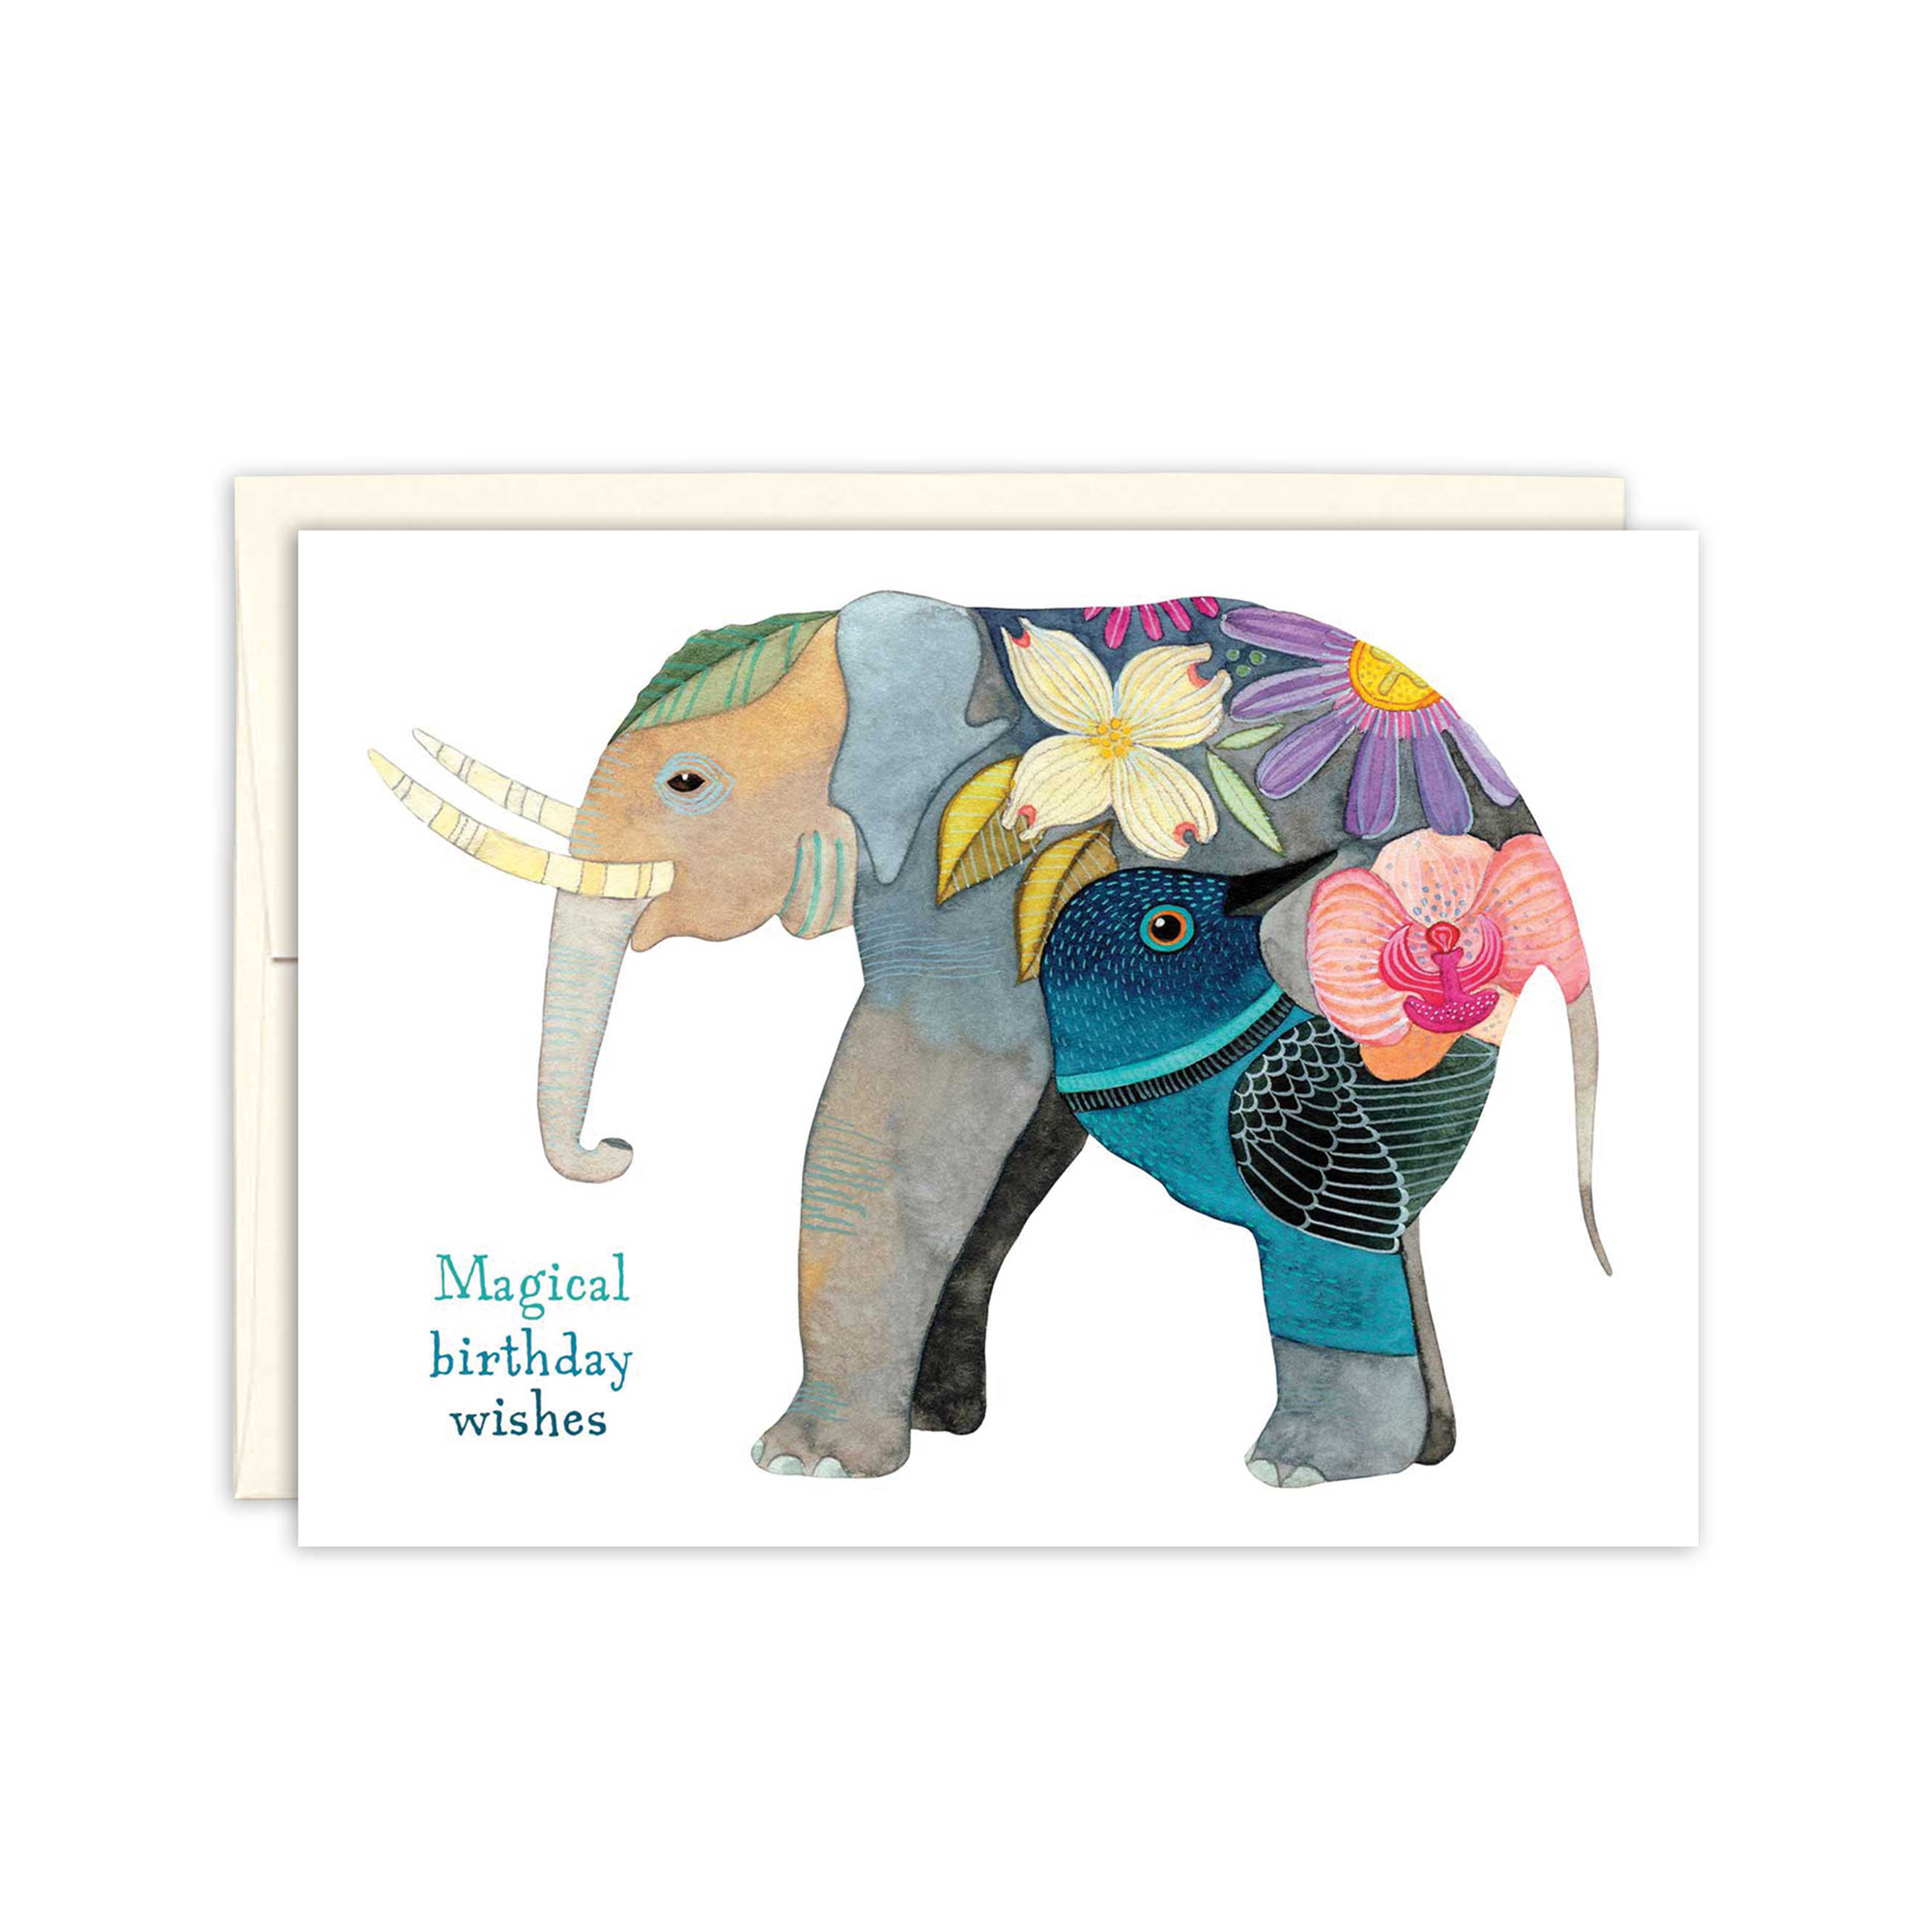 Biely & Shoaf - Artistic Elephant Birthday Card